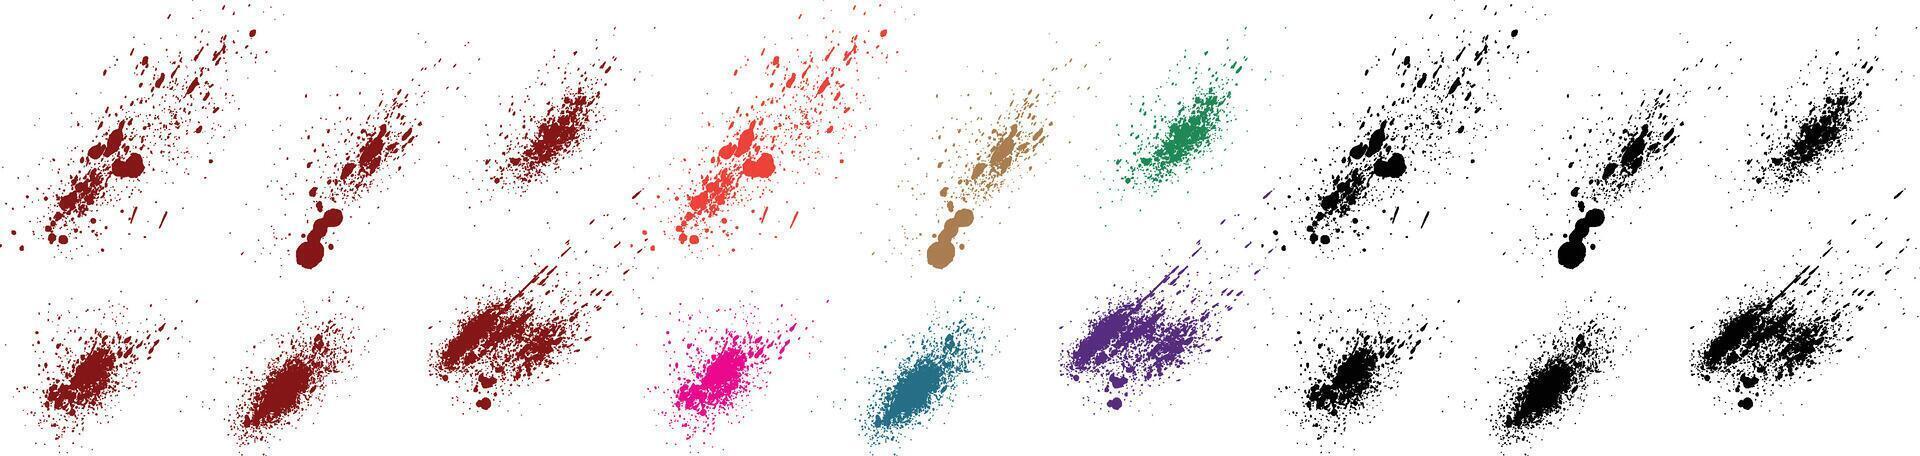 abstrakt gemalt Tropfen Blut Grunge Textur Grün, Rosa, lila, Rot, Schwarz, Blau Farbe Bürste Schlaganfall Hintergrund Sammlung vektor